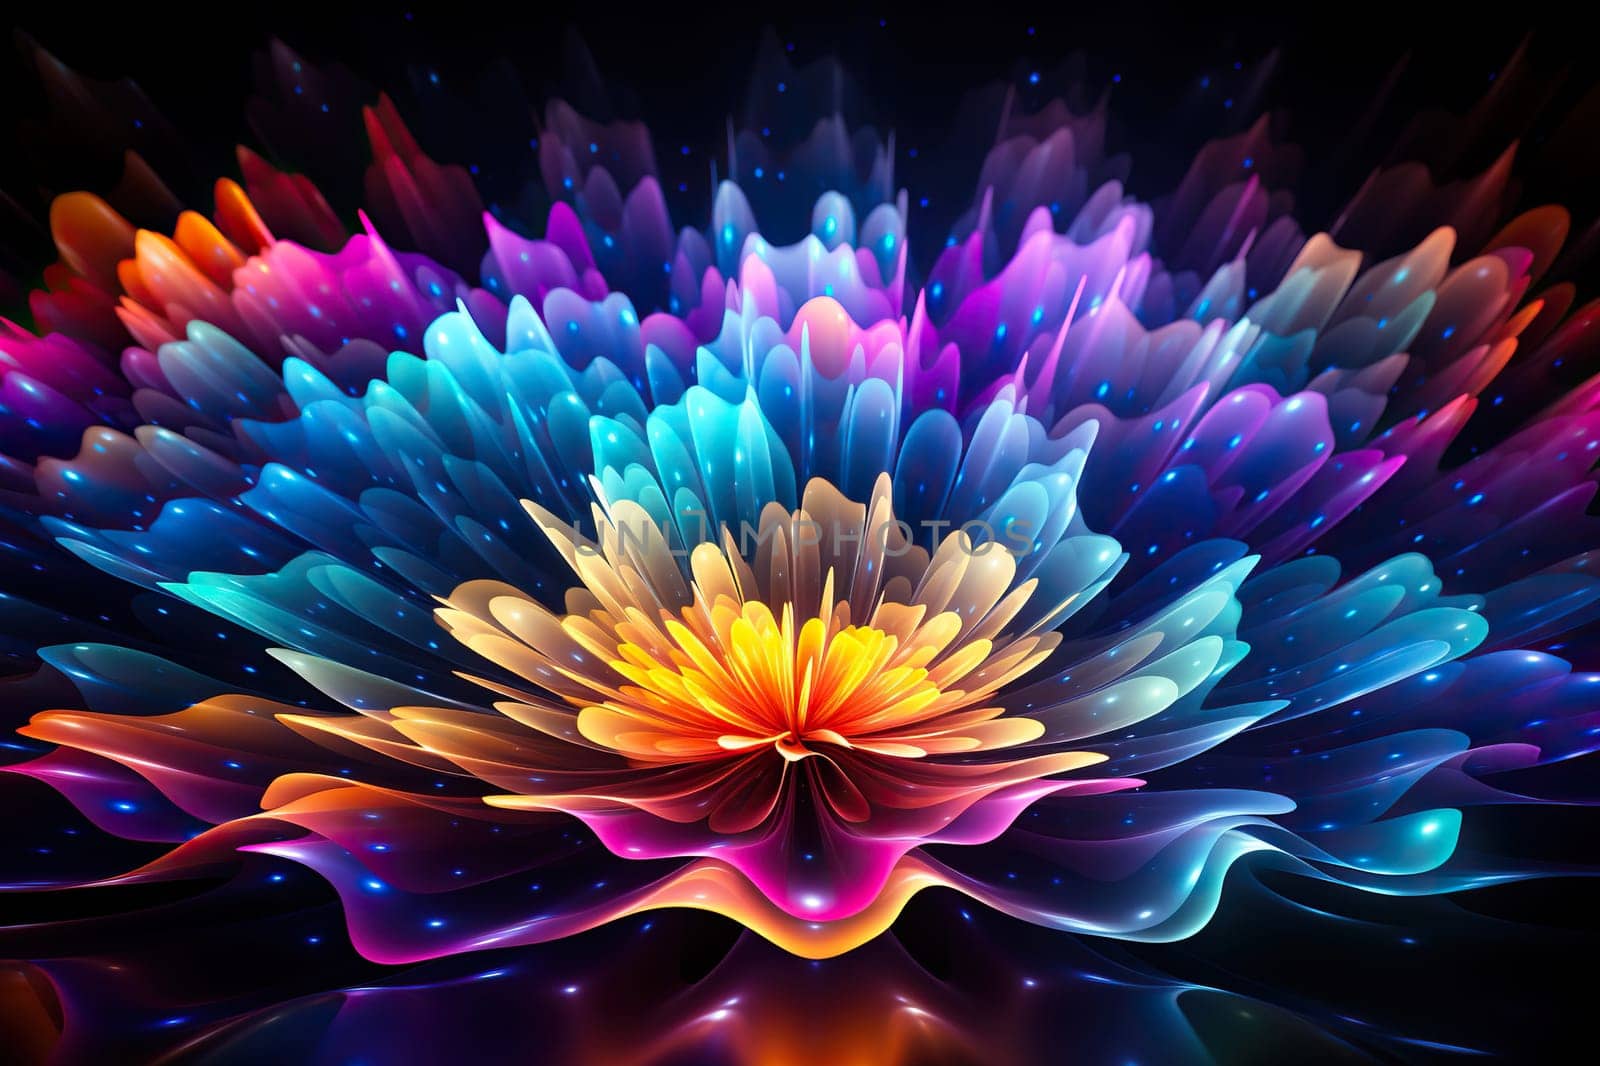 Digital neon flower, wave on a dark background. Neon abstract background.